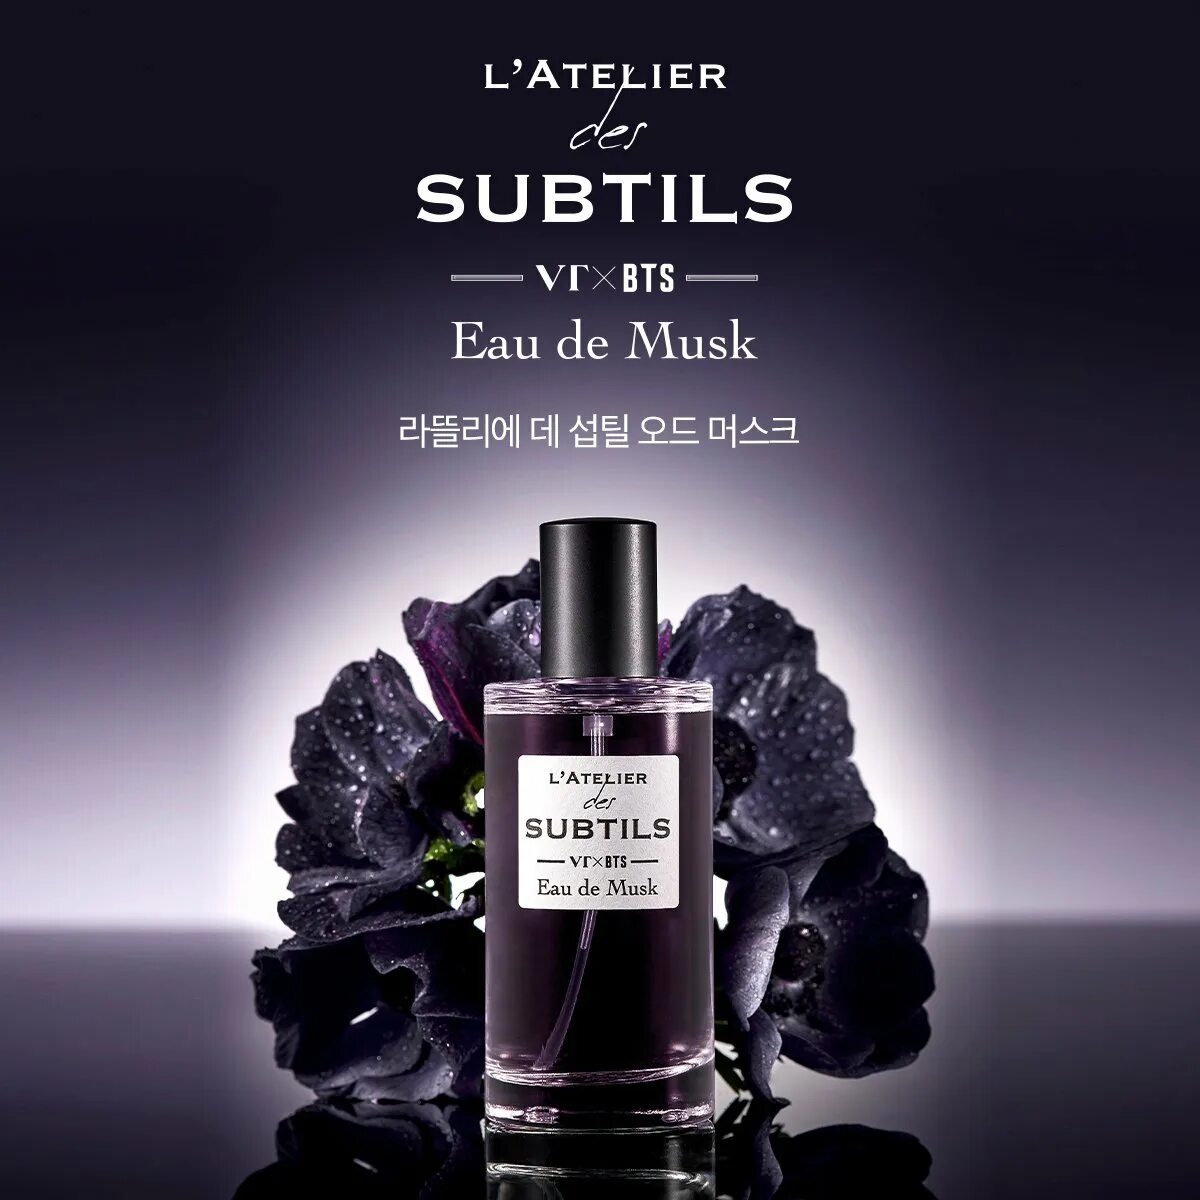 Духи бтс. L'Atelier Parfum BTS. Subtils VR BTS духи. BTS X VT L'Atelier Perfume. Subtils VT BTS.